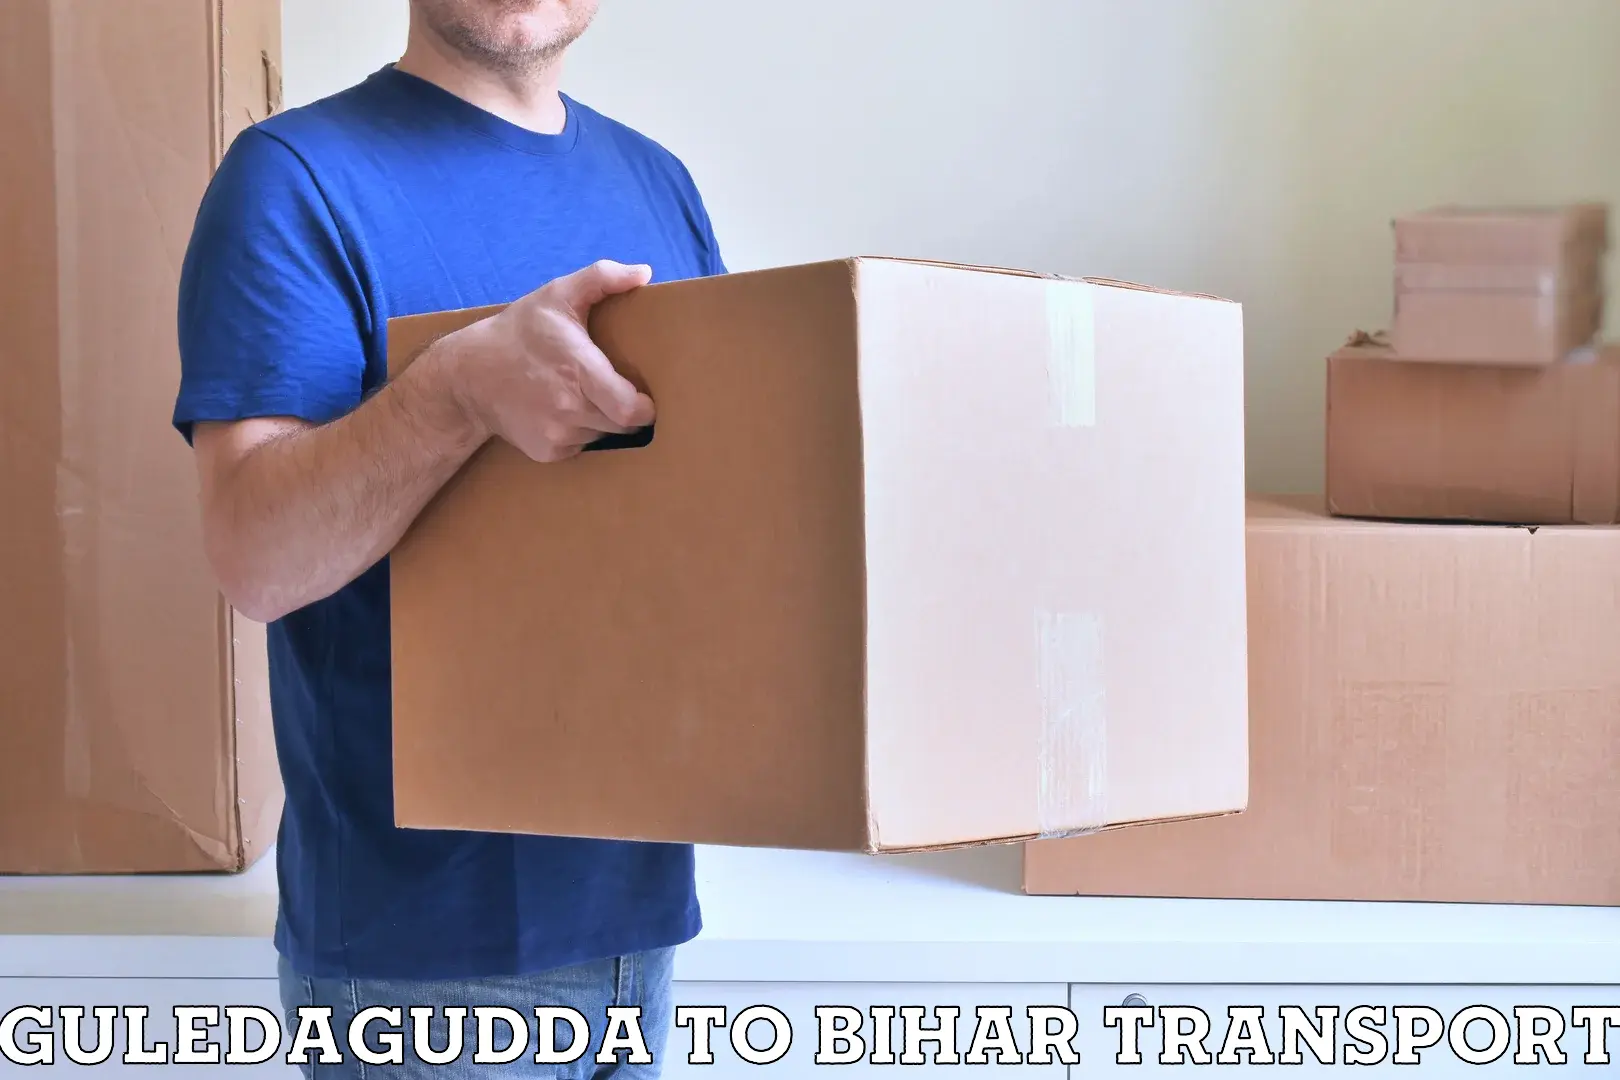 Container transportation services Guledagudda to IIIT Bhagalpur